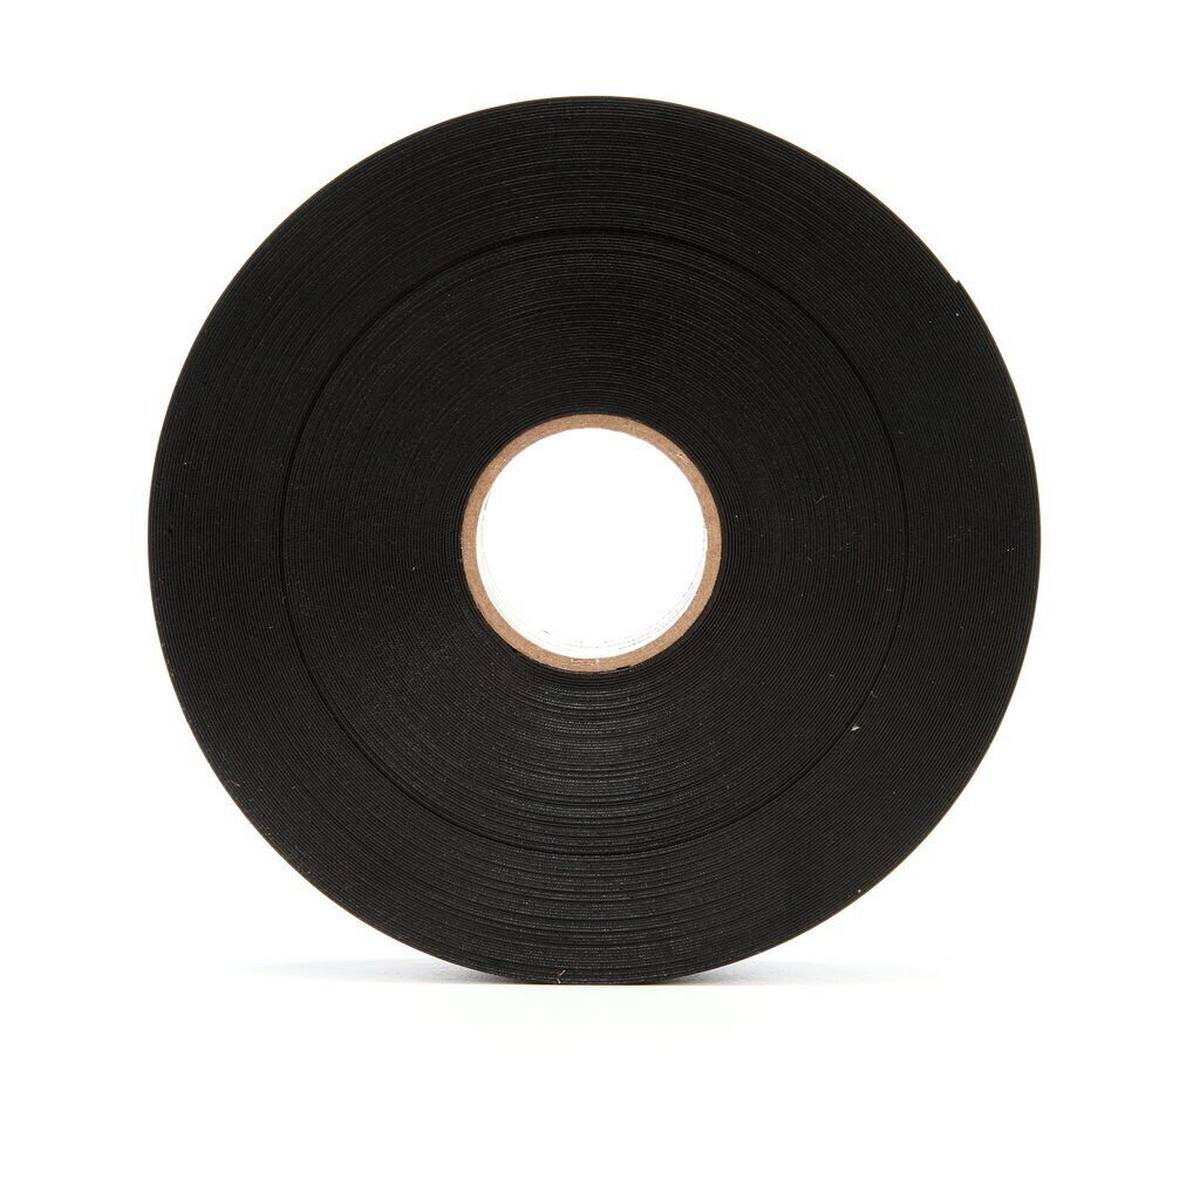 3M Scotchrap 51 corrosiewerende tape, zwart, 100 mm x 30 m, 0,5 m